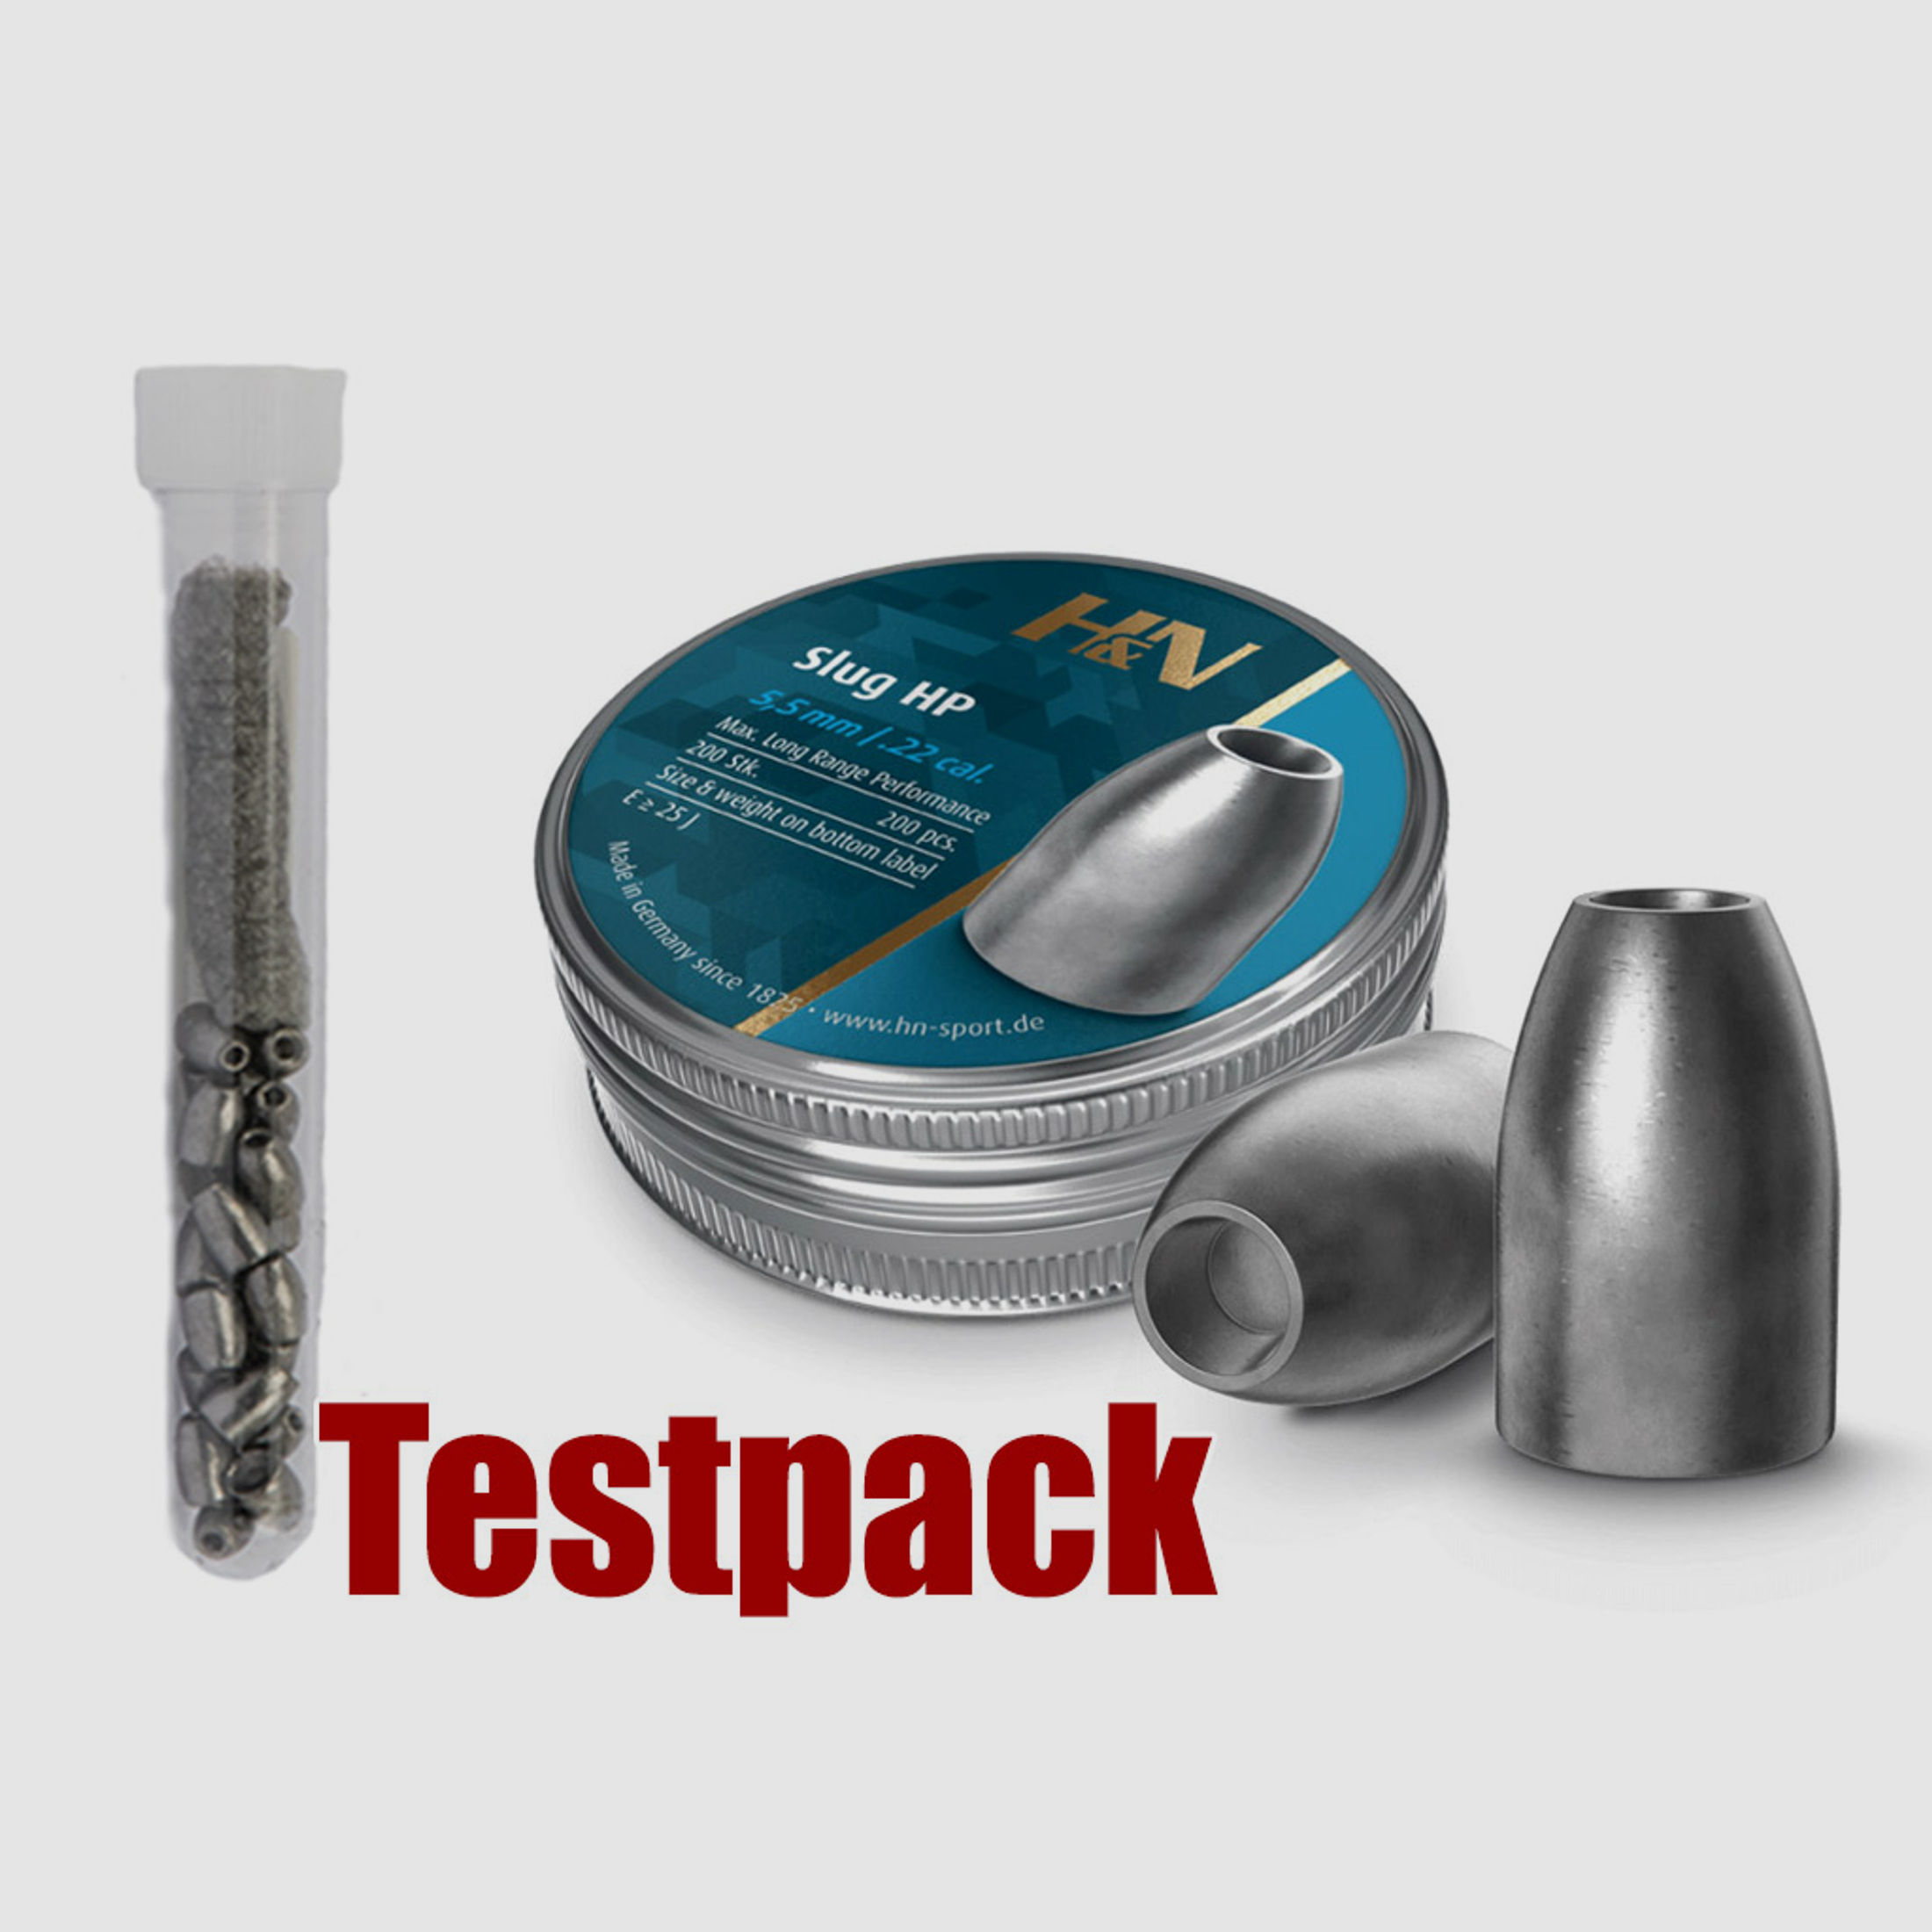 Testpack - H&N Slug HP Diabolo, Hohlspitz, glatt, 1,94 g, 30 gr, Kaliber 5,51 mm, 20 StĂĽck